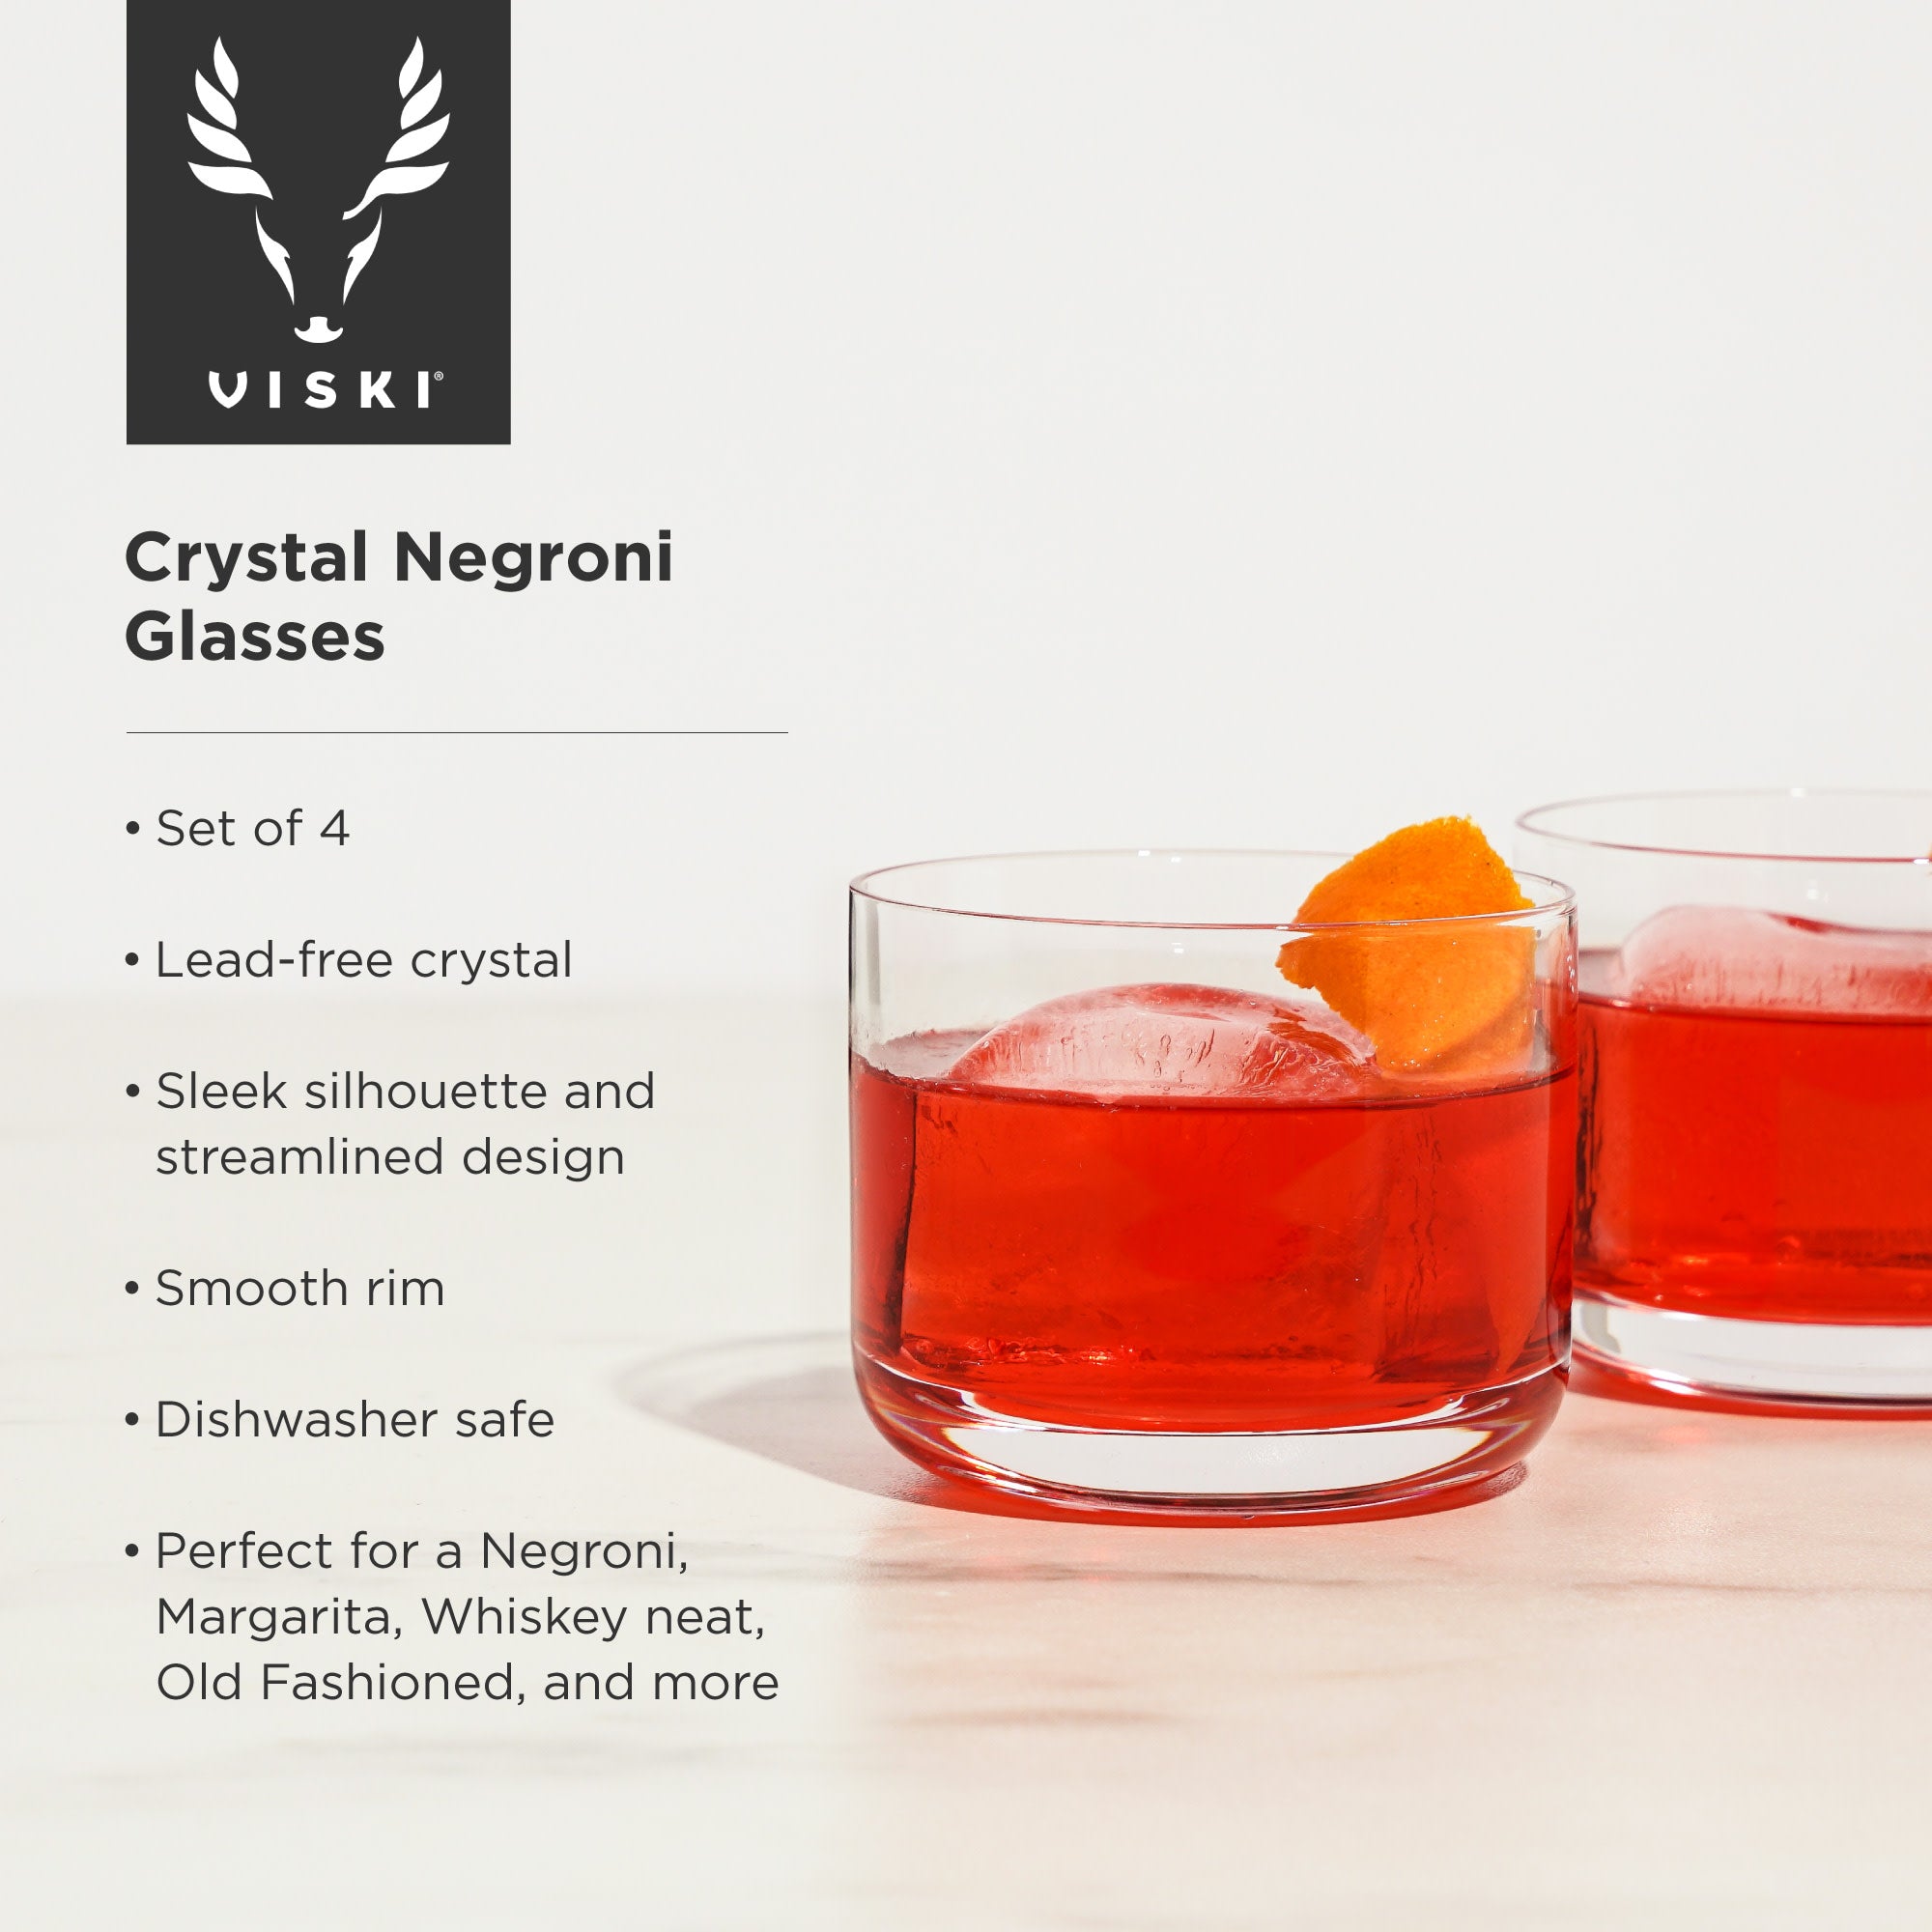 Crystal Negroni Glasses by Viski®